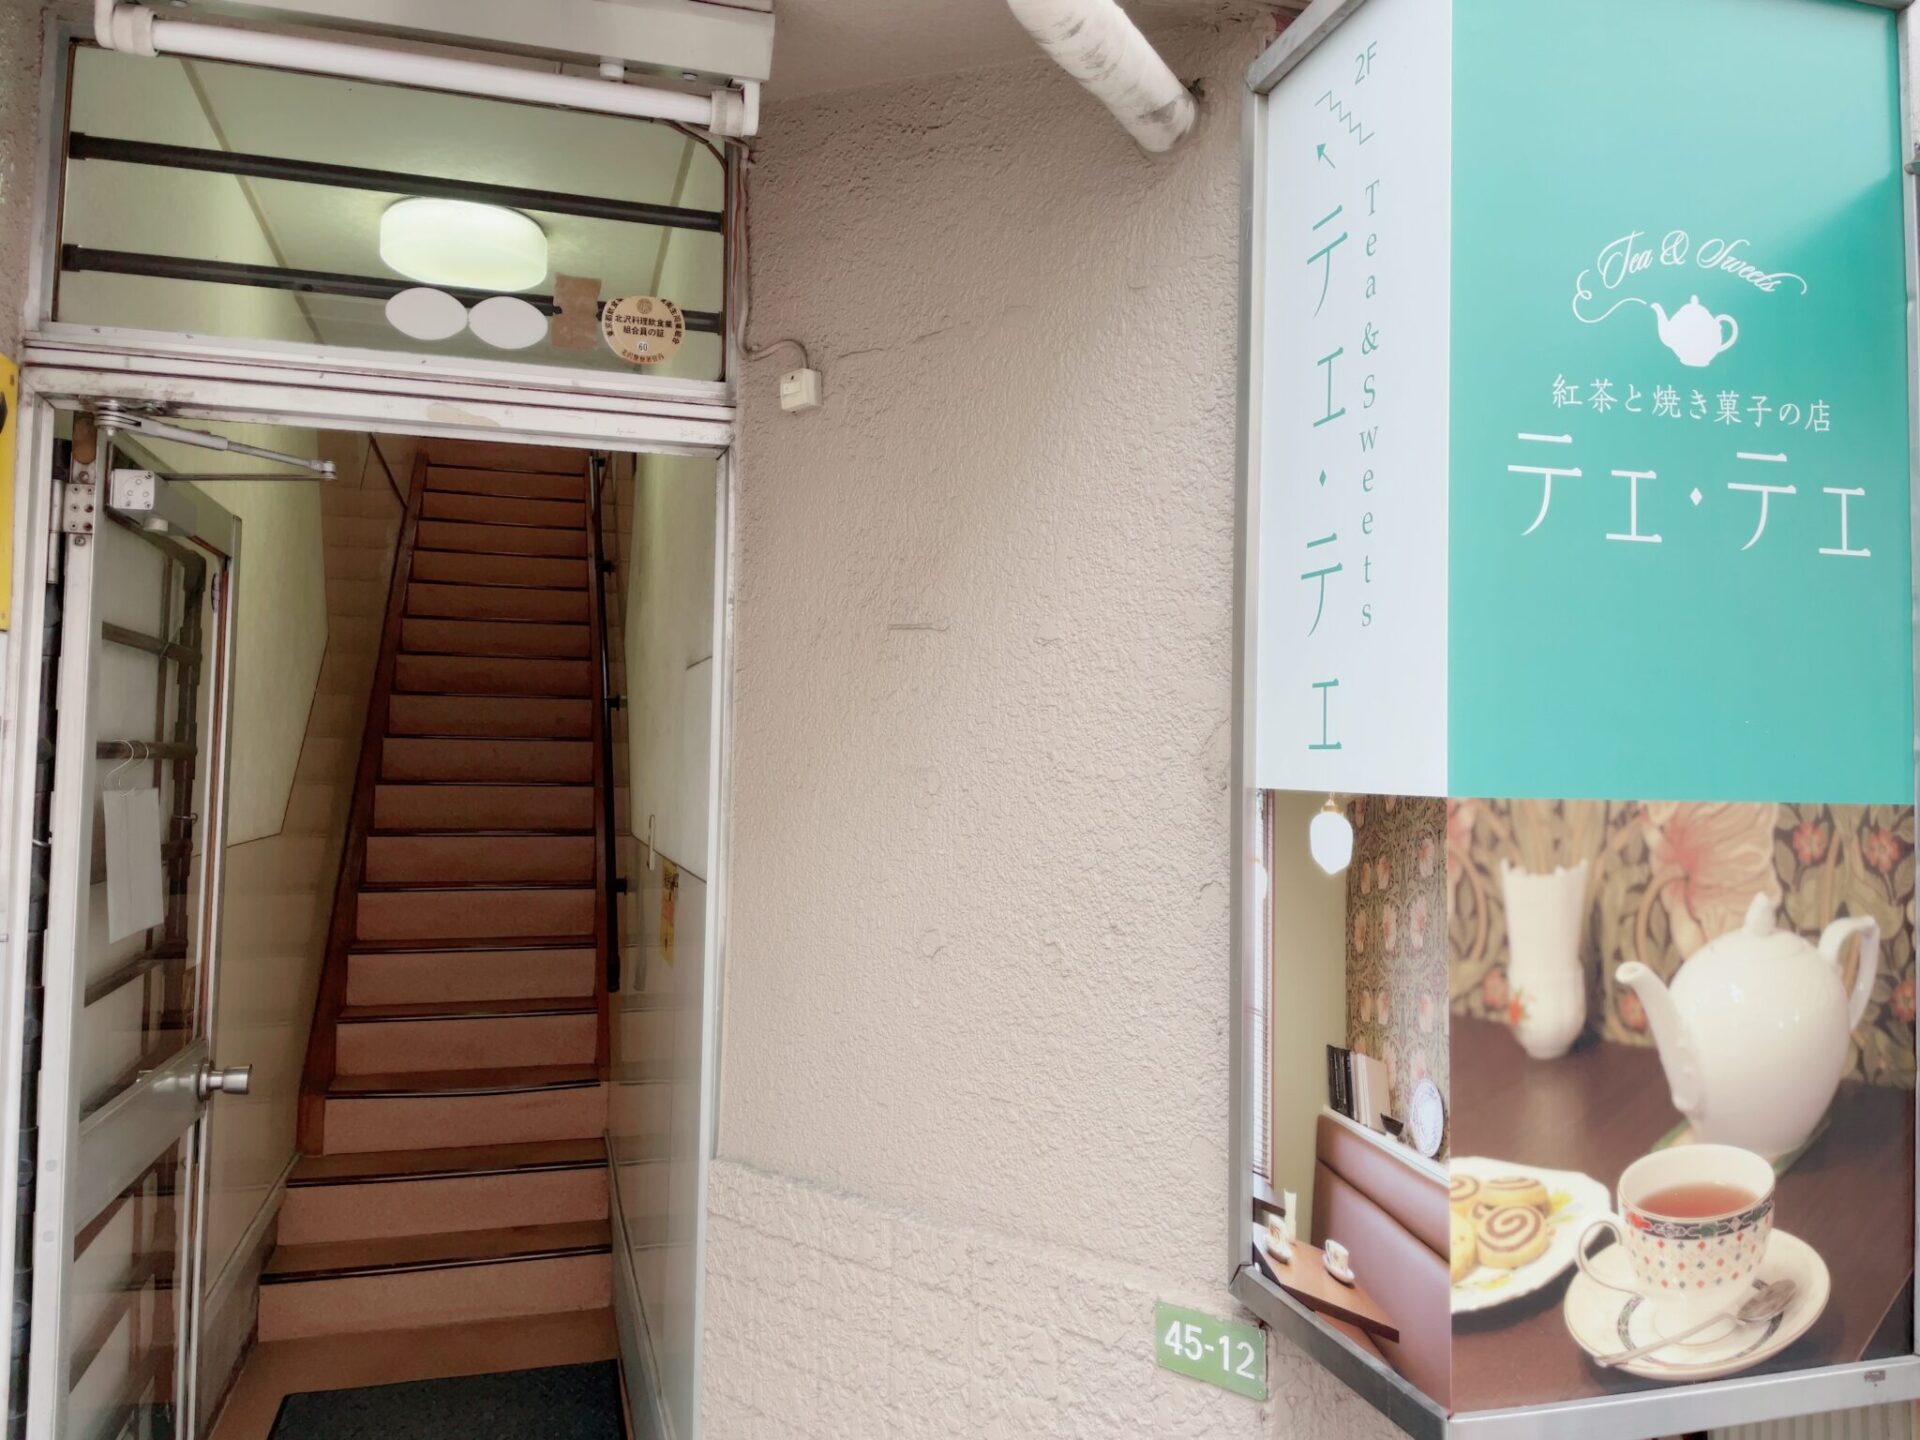 【テェ・テェ 下高井戸】紅茶と焼き菓子の店の外観